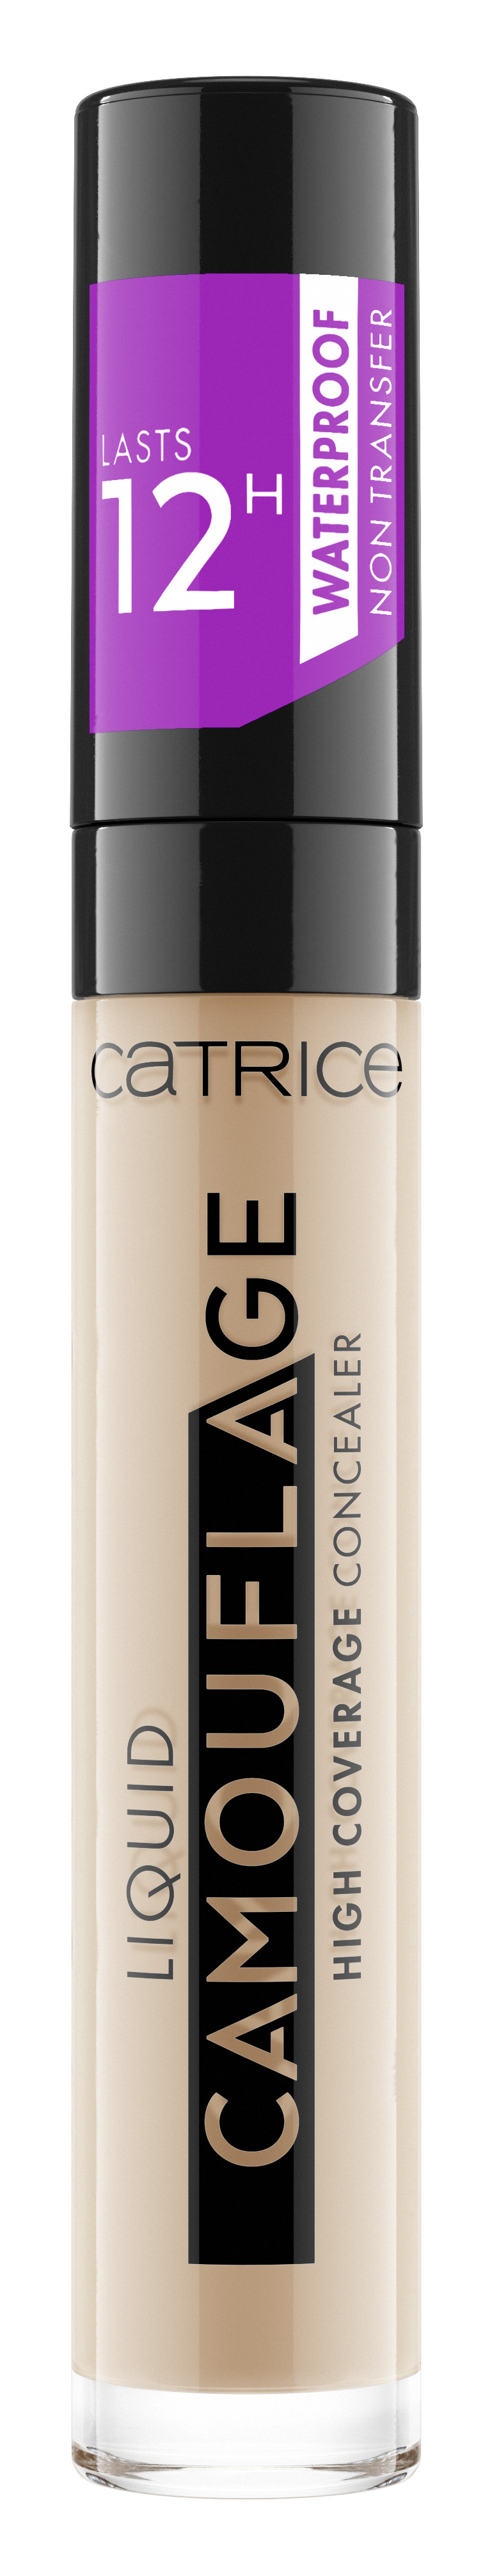 Купить Консилер CATRICE Liquid Camouflage High Coverage Concealer 015 Honey 5 мл